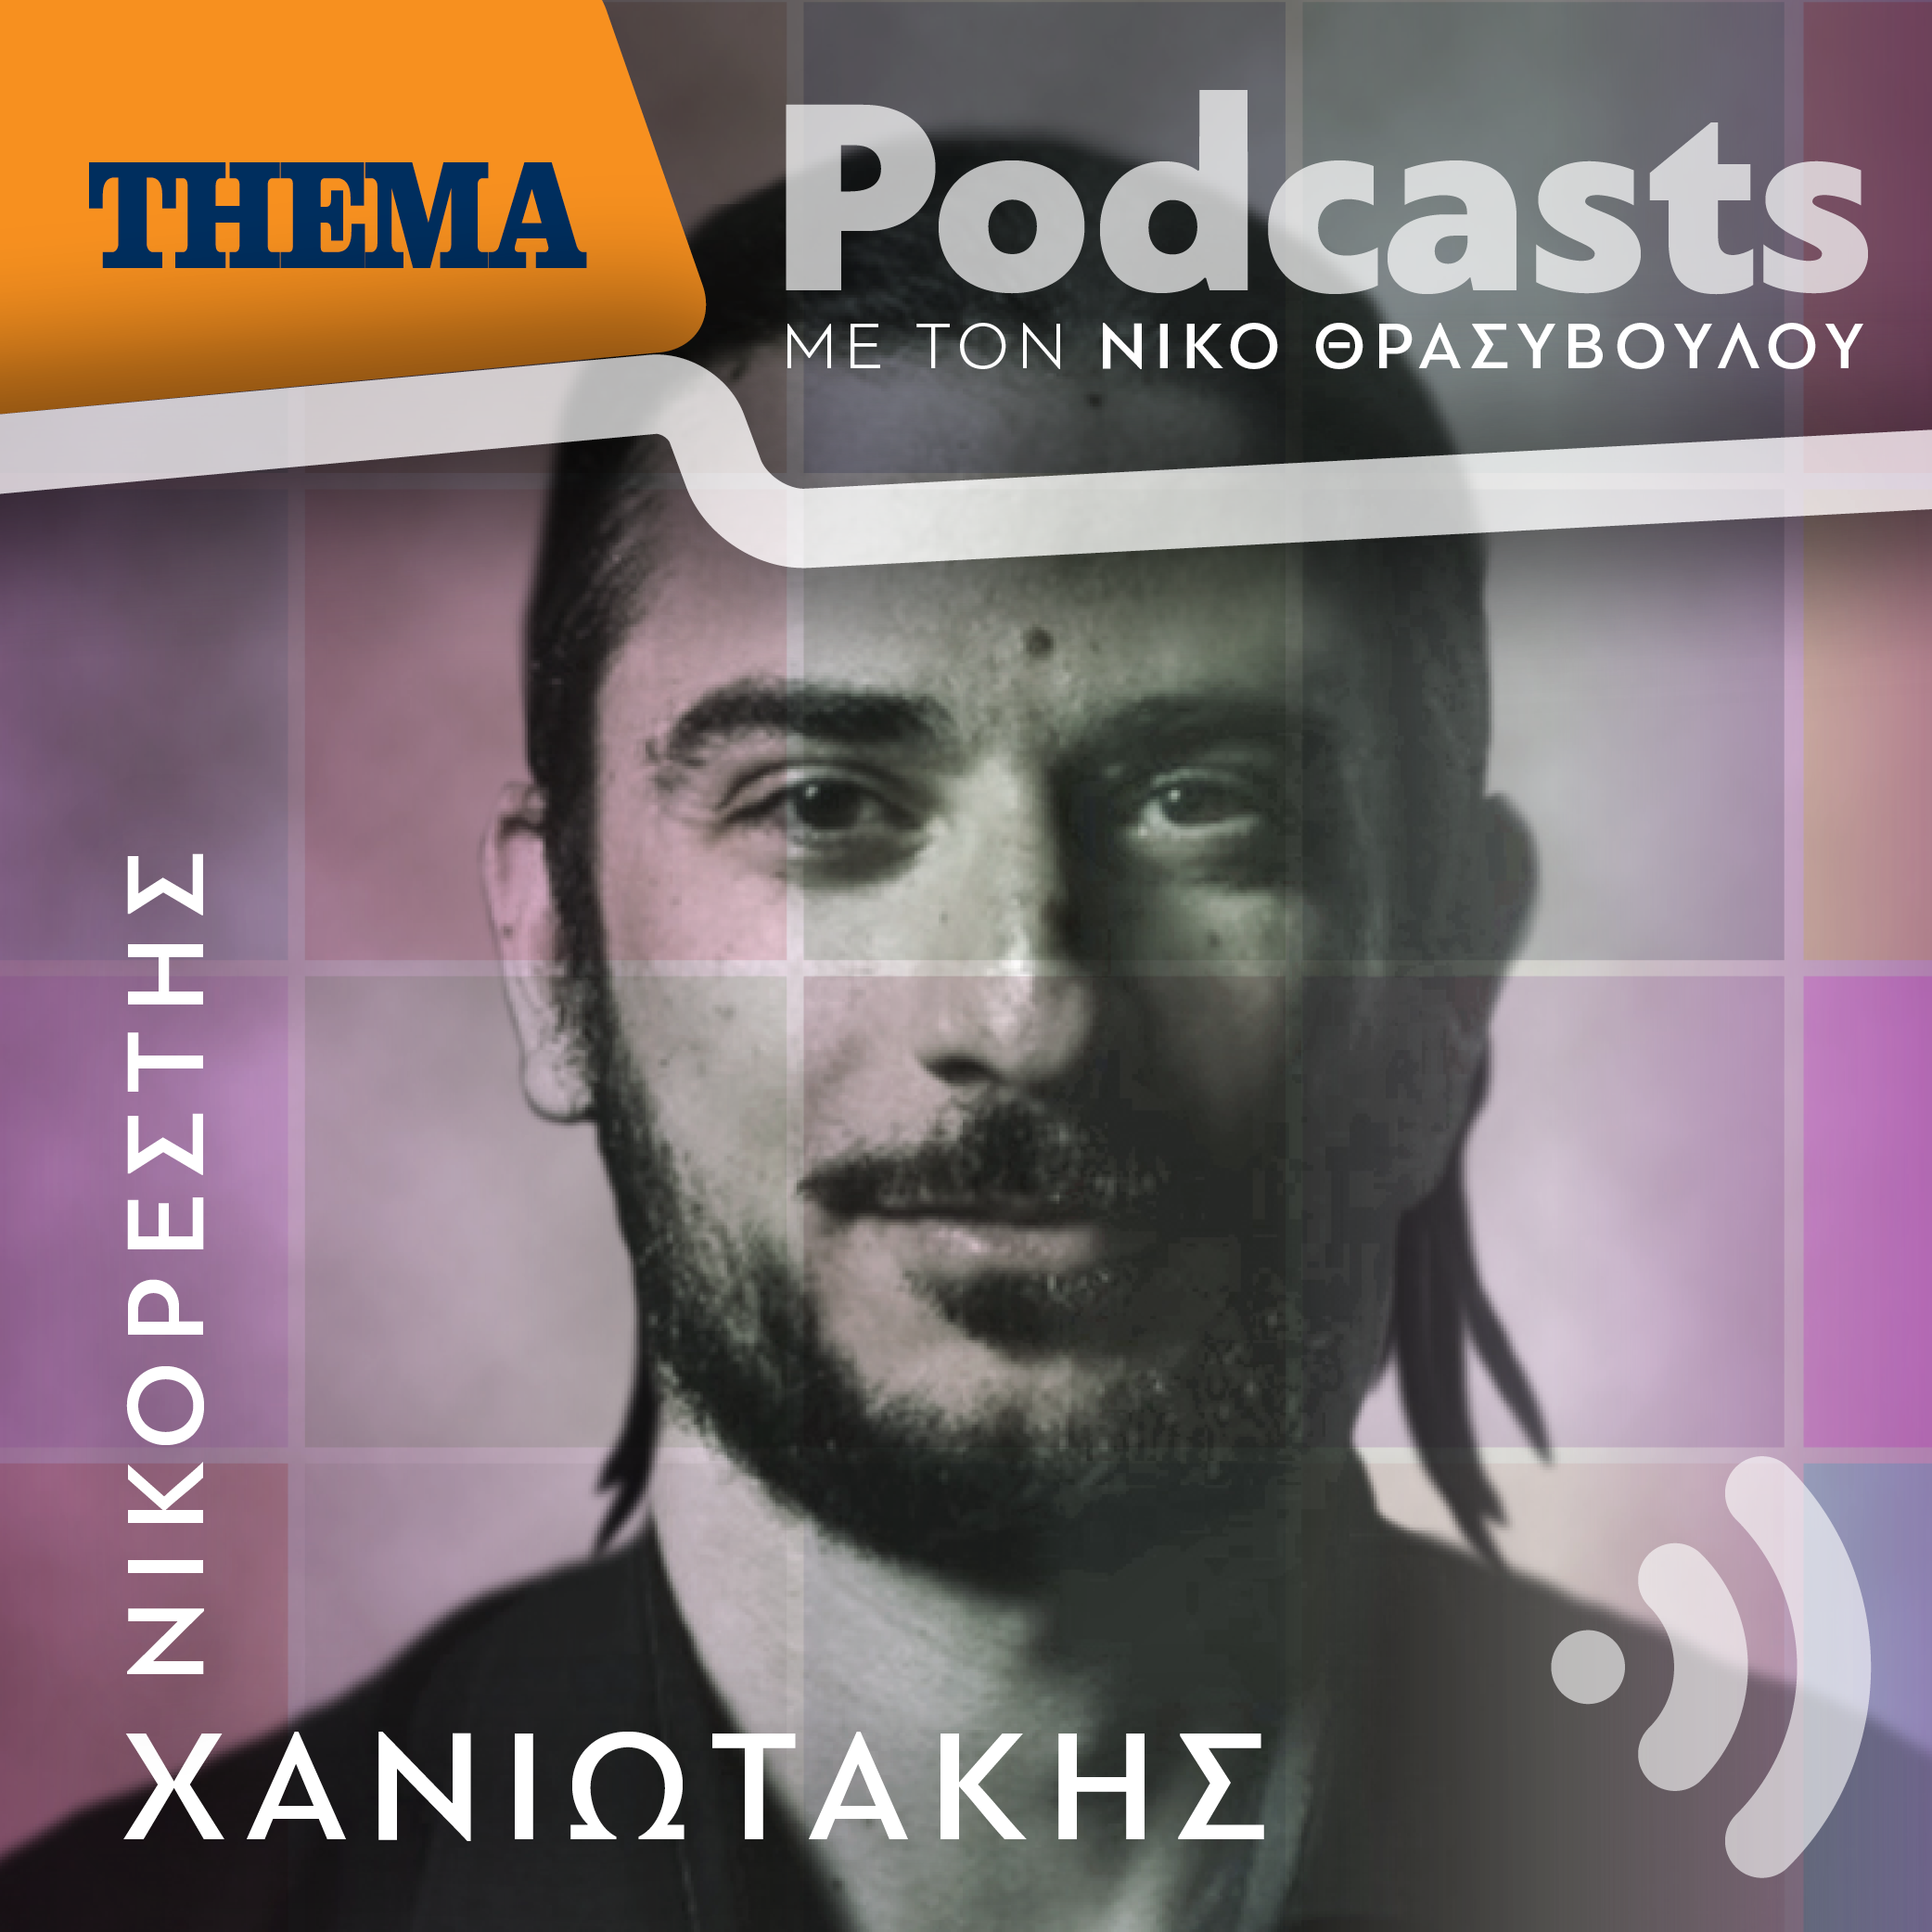 Νικορέστης Χανιωτάκης: «Είμαι εναντίον, οι σκηνοθέτες να παίζουν στις παραστάσεις που σκηνοθετούν, τώρα όμως...»